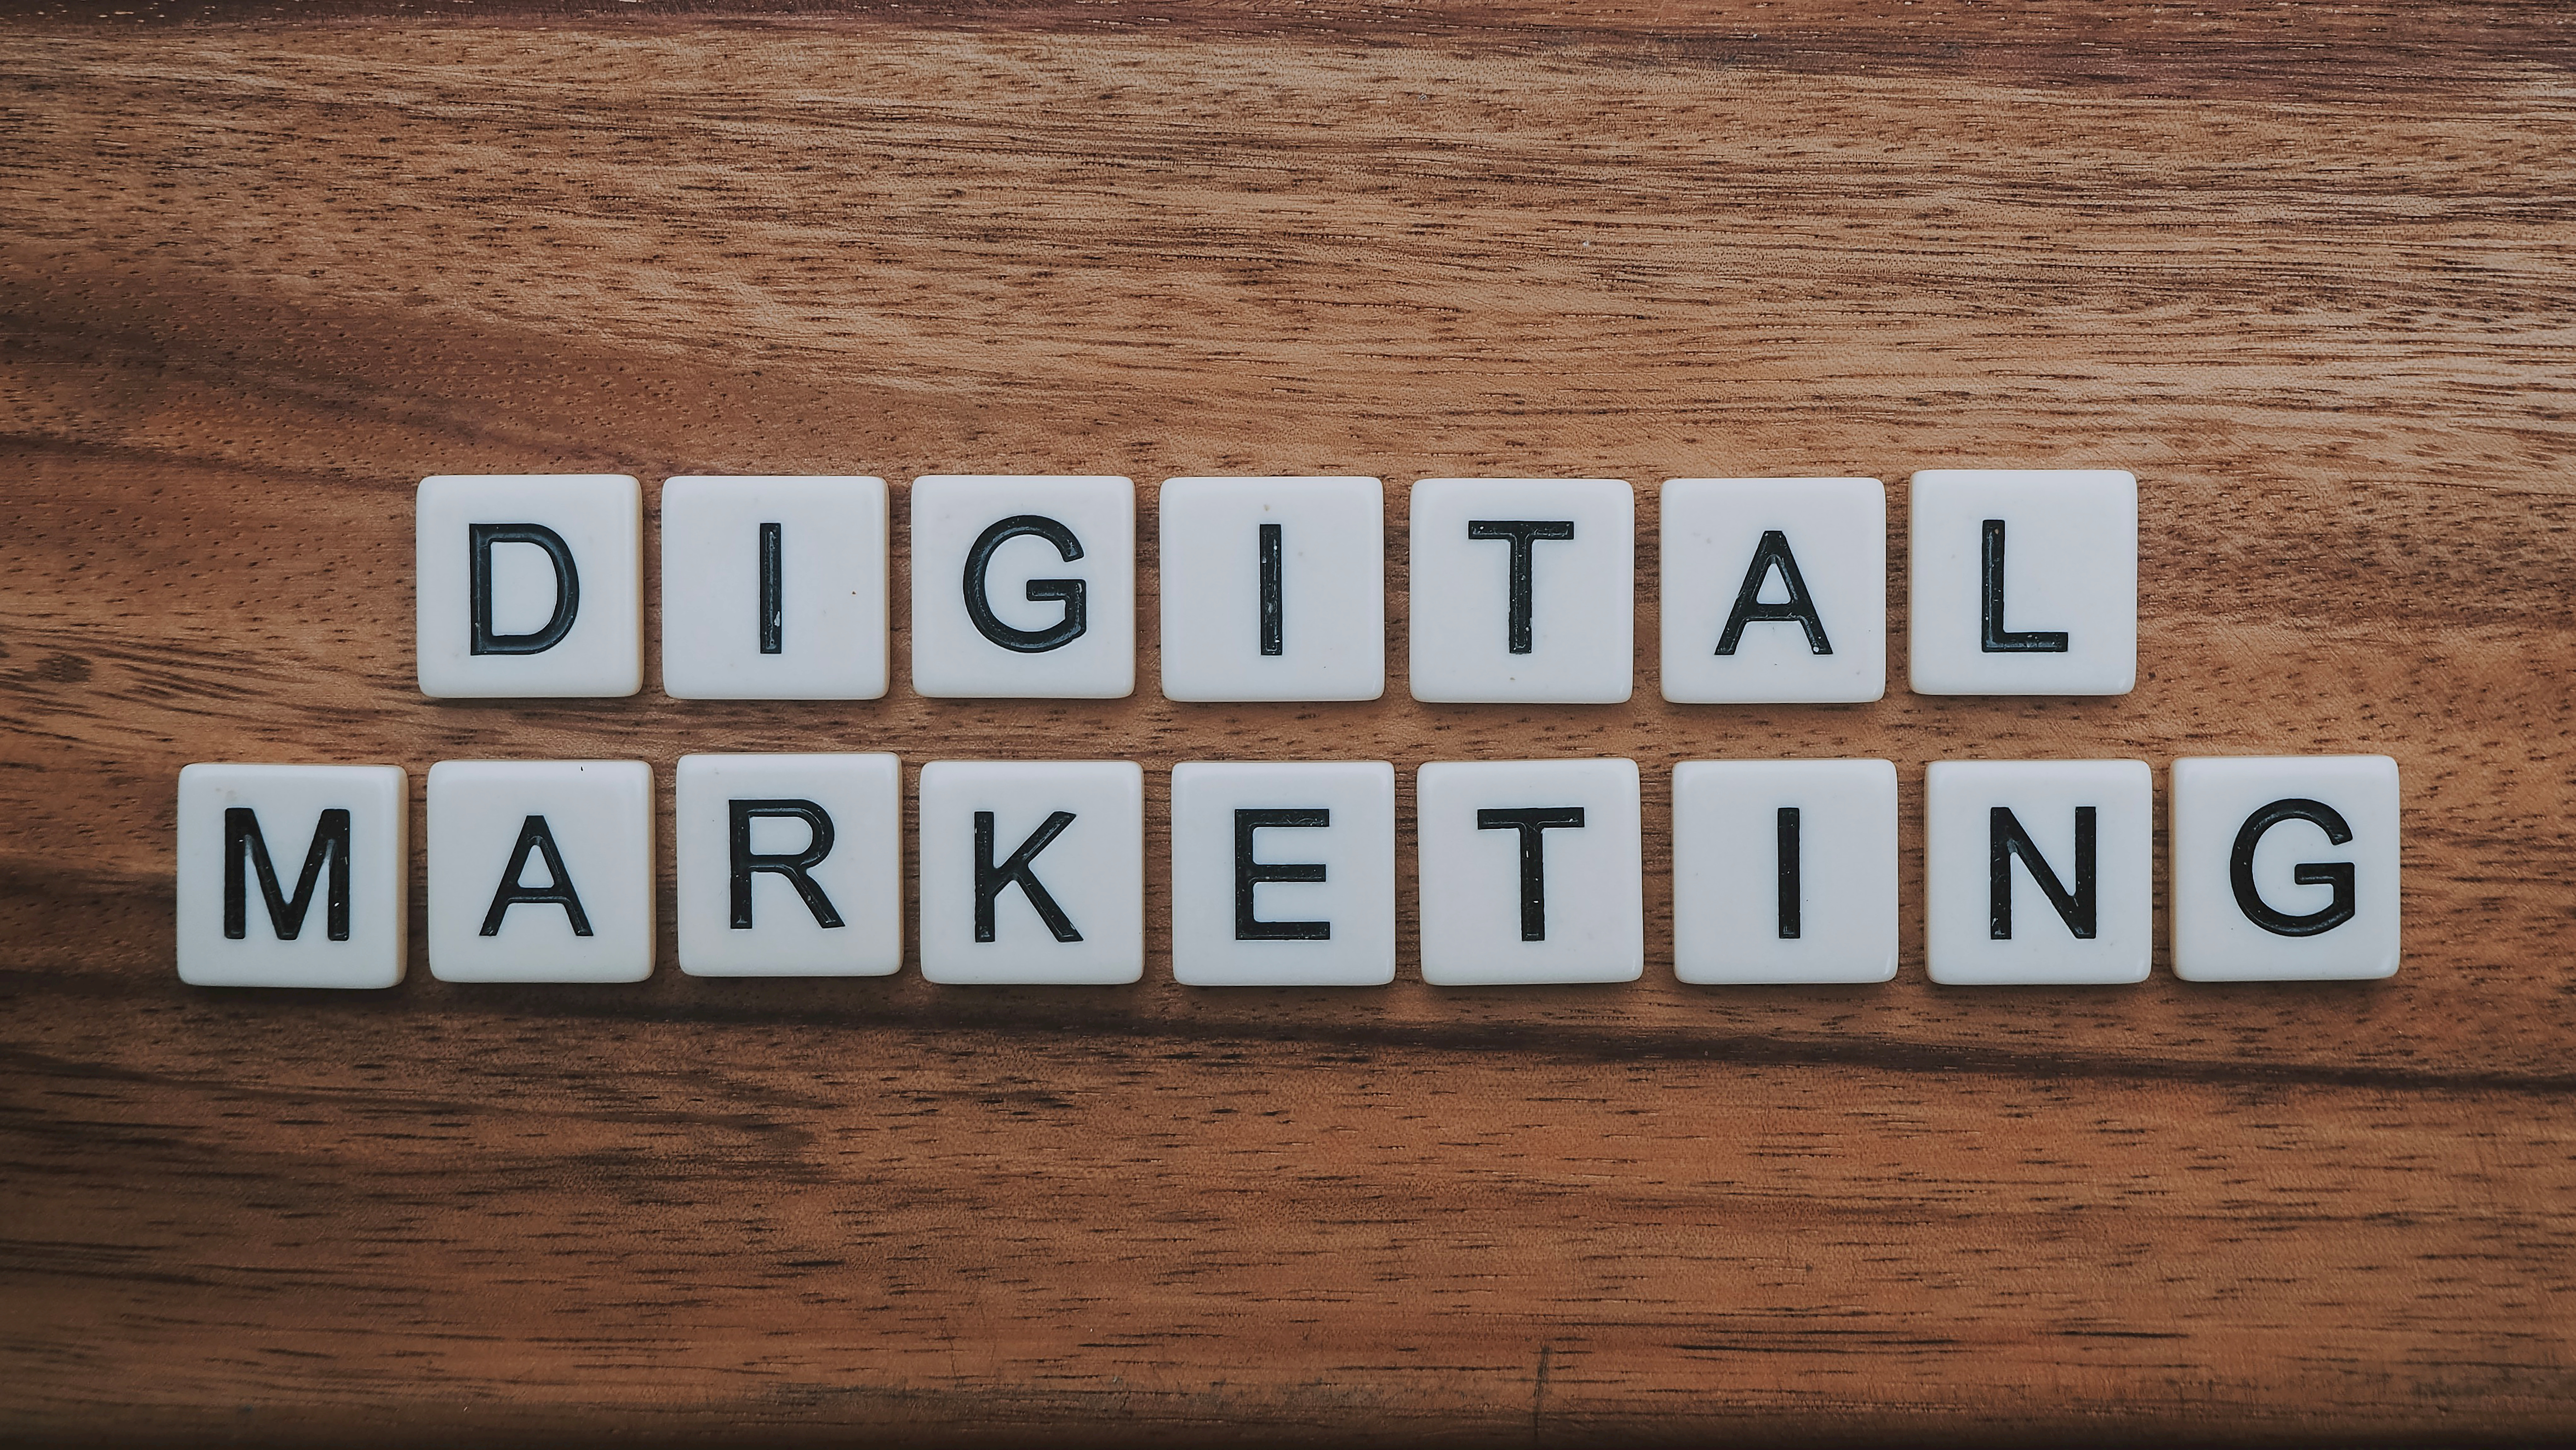 le digital marketing est une stratégie de marketing qui utilise des canaux numériques pour promouvoir des produits ou services, notamment à travers internet et les réseaux sociaux.